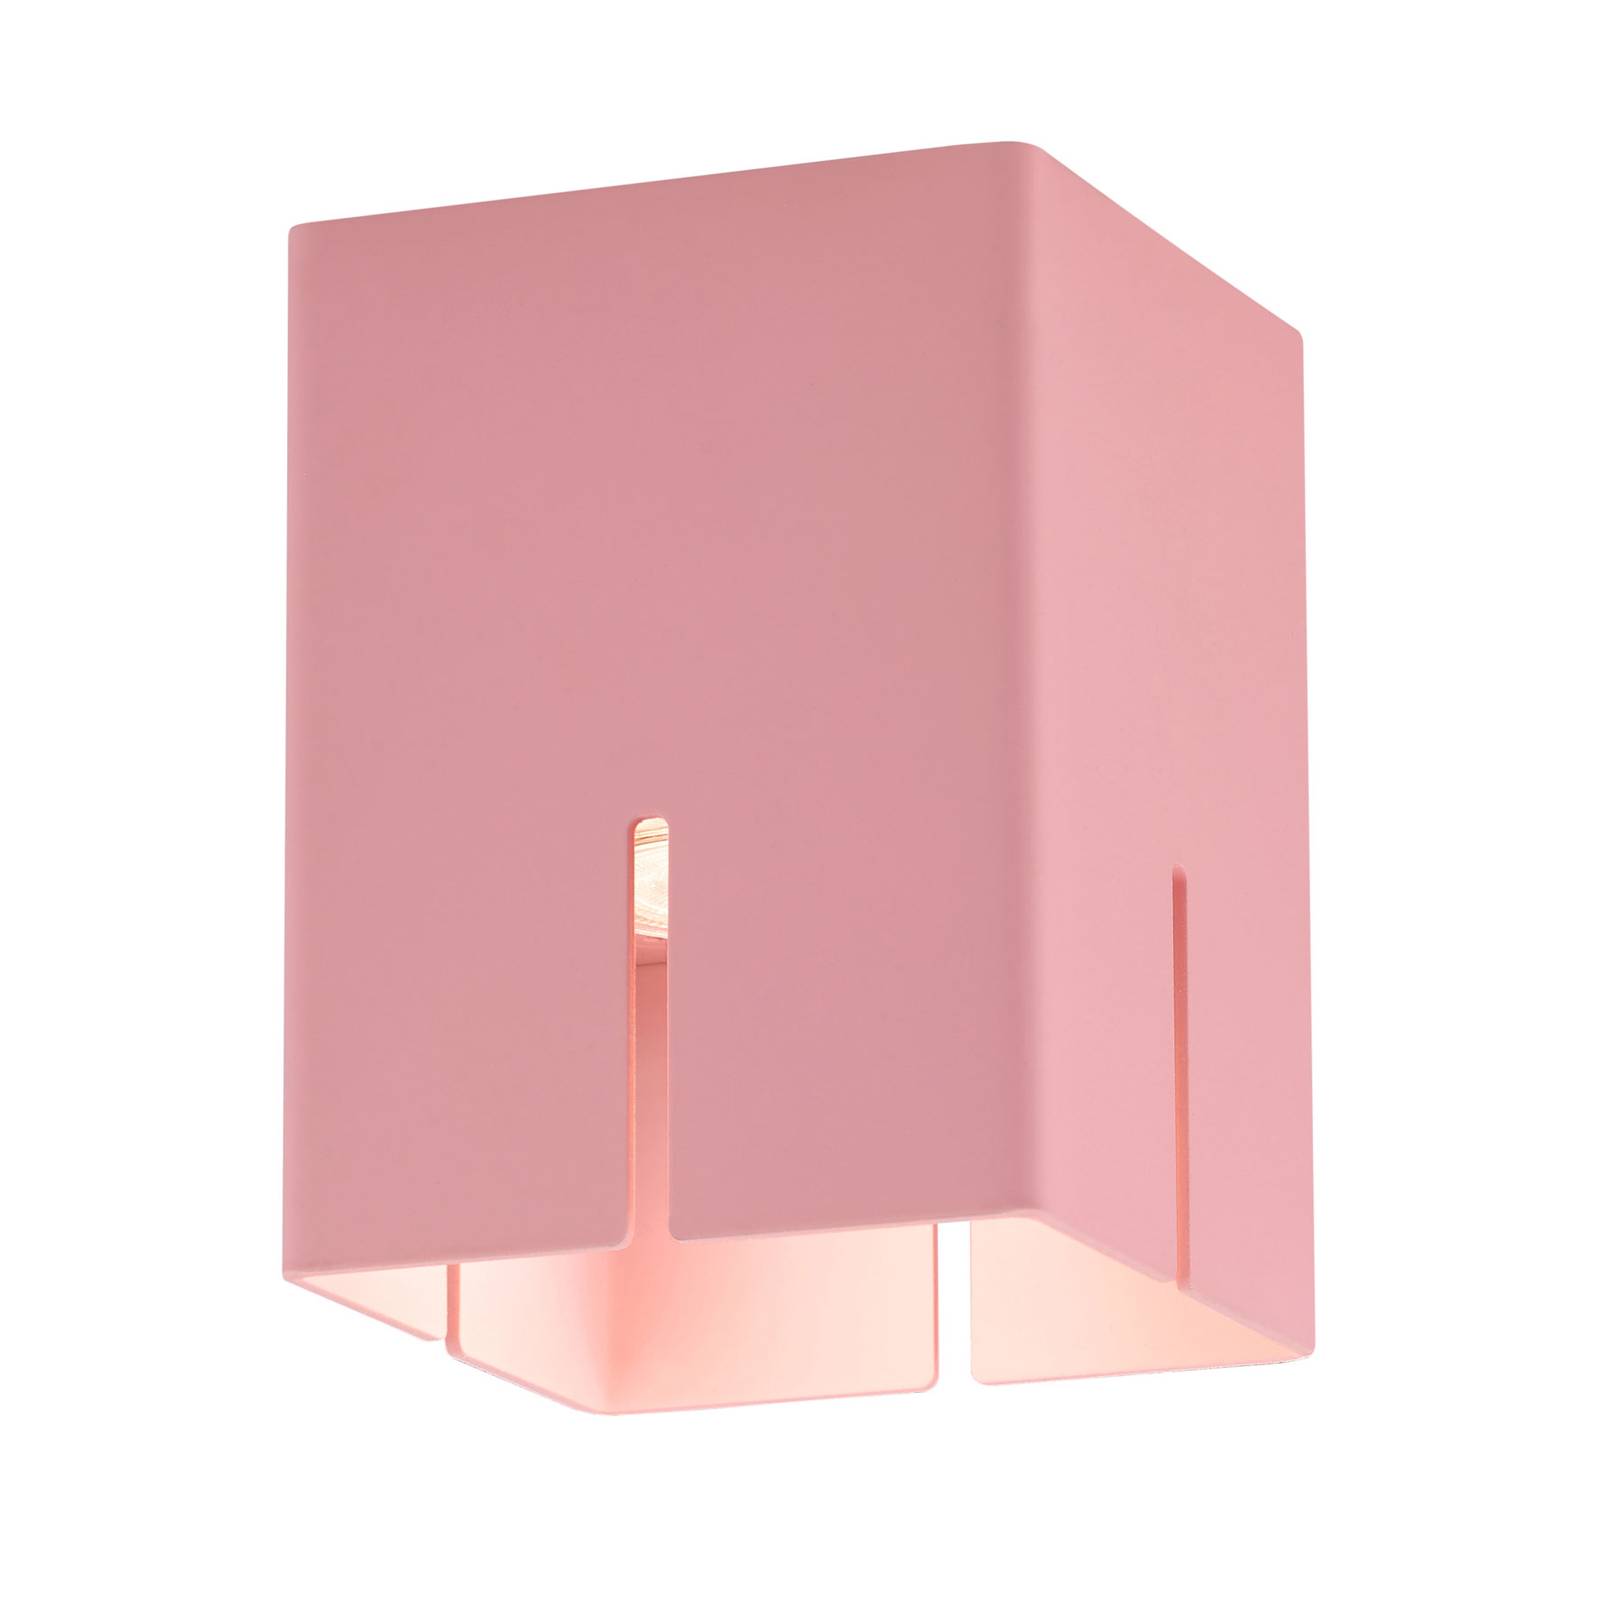 Baulmann 83.201 Deckenleuchte, rosa, Höhe 16 cm